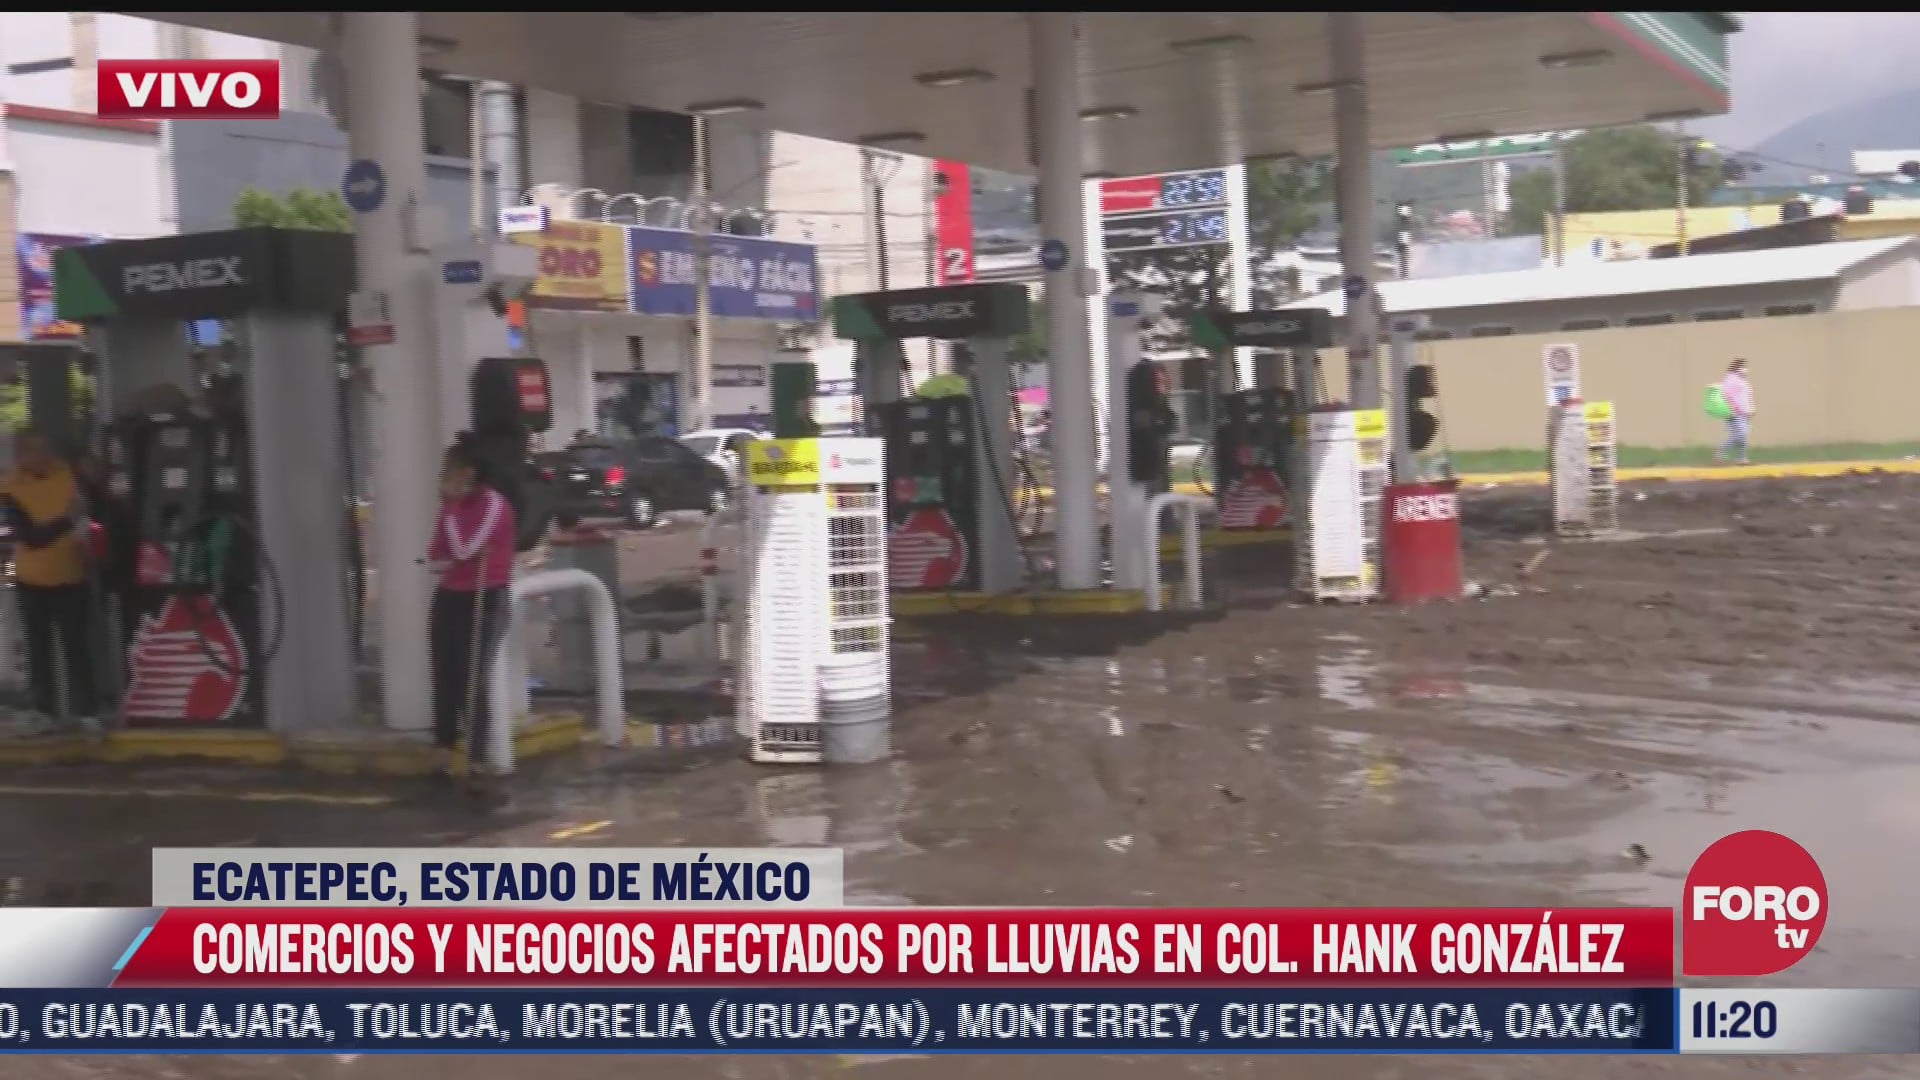 gasolineras y negocios afectados por lluvia en colonia hank gonzalez en ecatepec